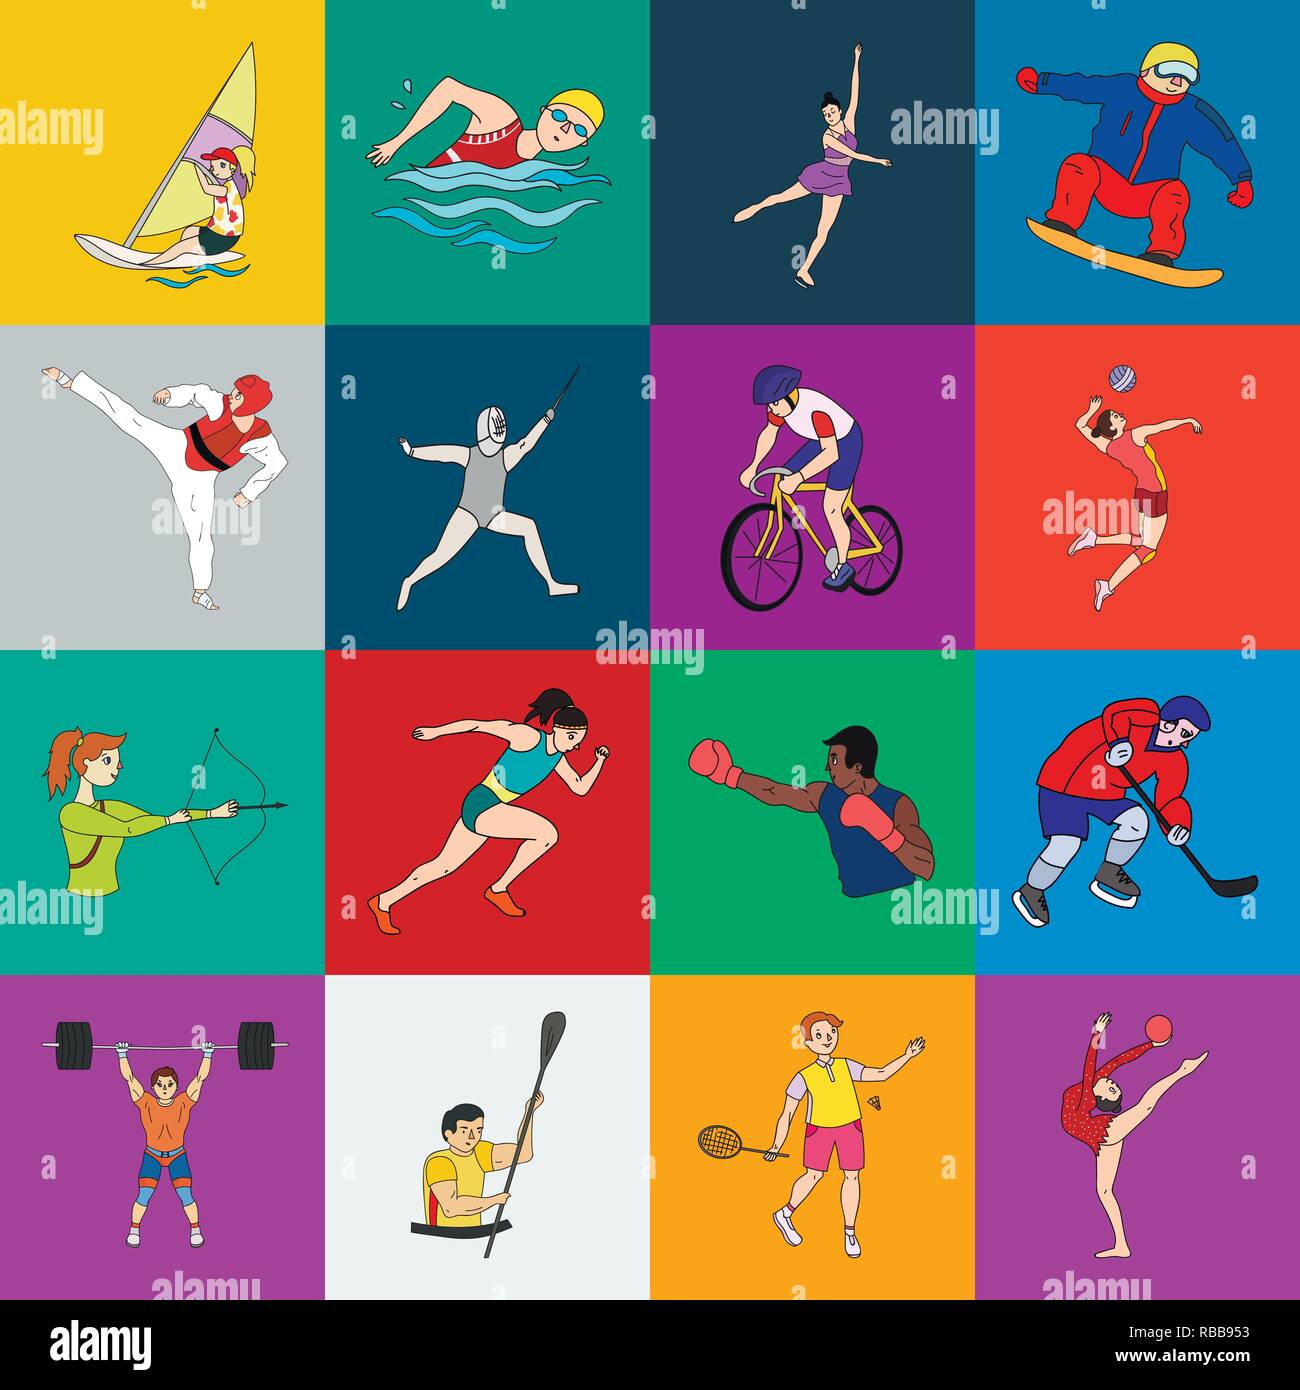 Different kind of sport. Виды спорта рисунки. Иллюстрации с разными видами спорта. Все спортивные виды спорта. Летние виды спорта.